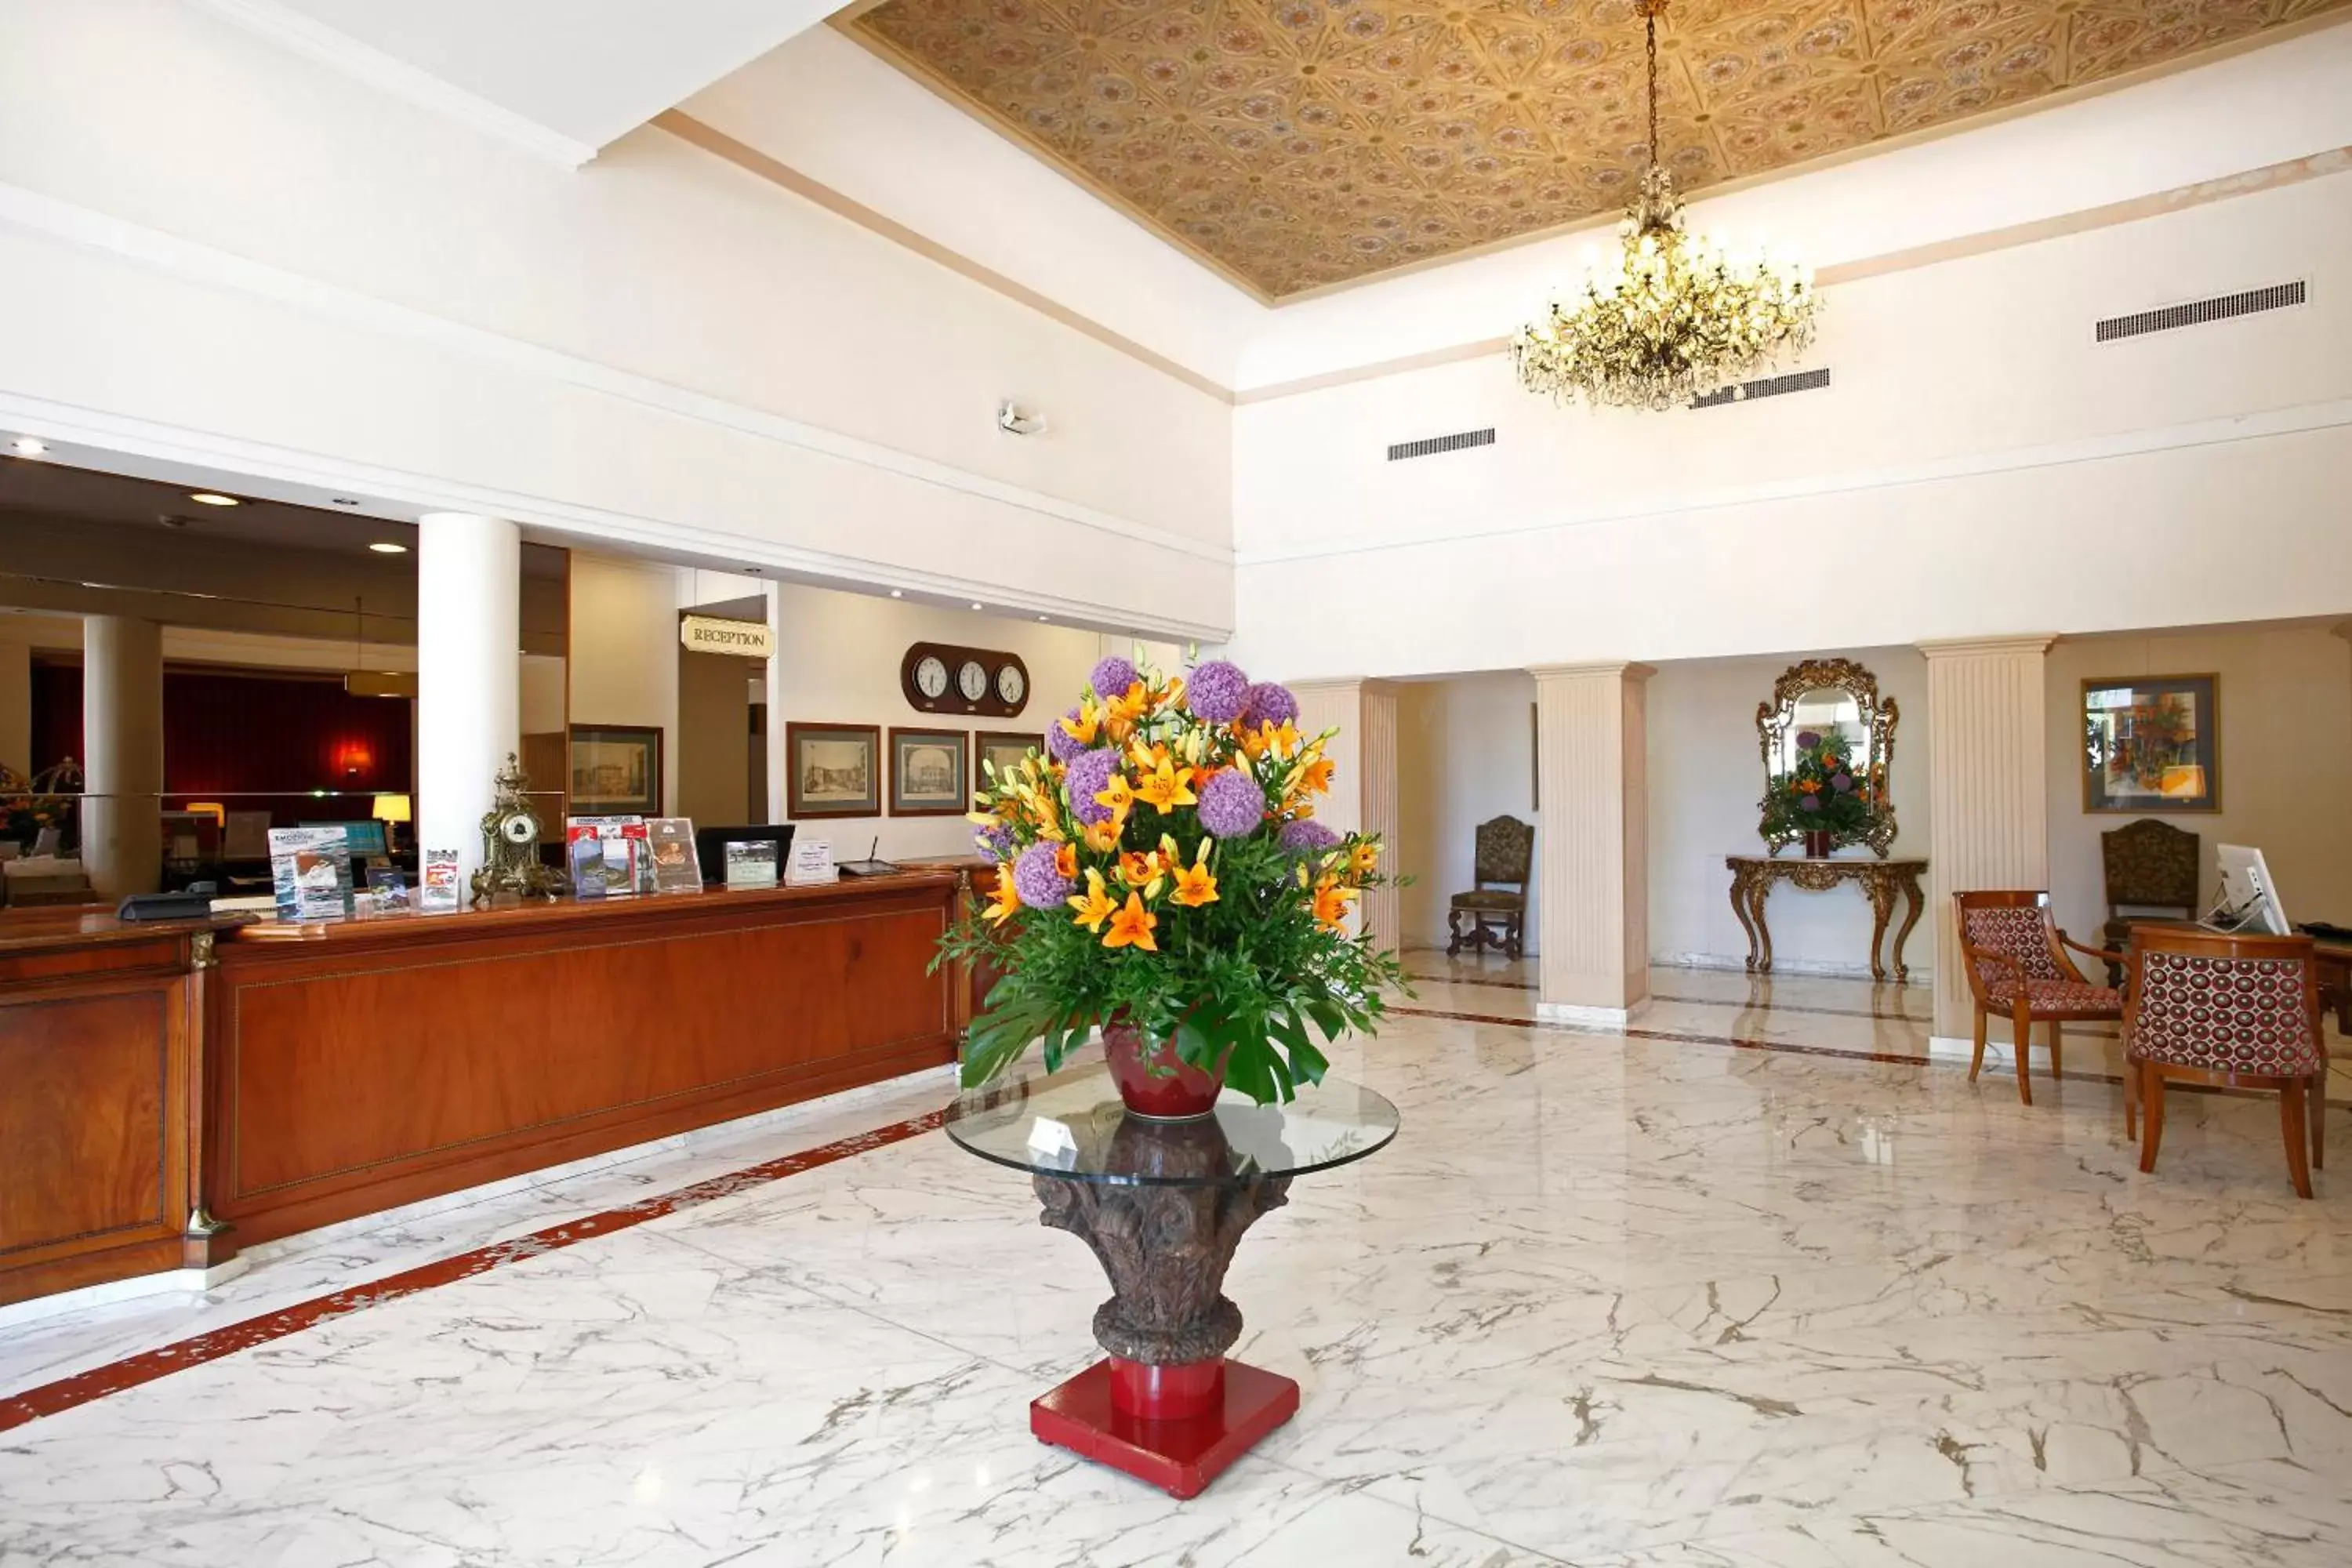 Lobby or reception, Lobby/Reception in Hotel De La Paix